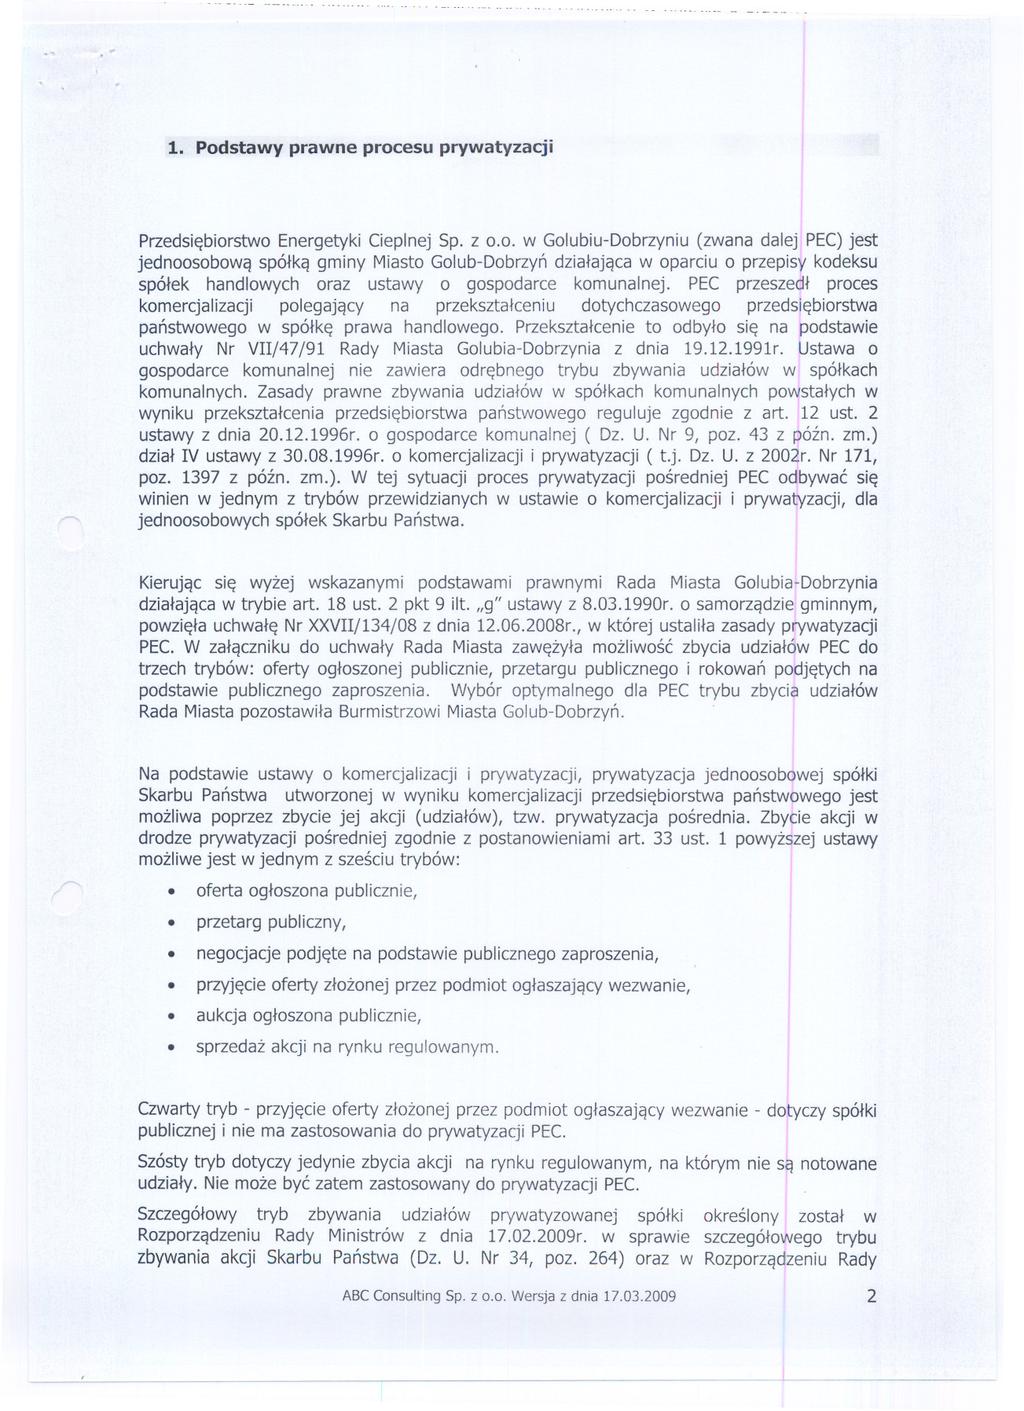 1. Podstawy prawne procesu prywatyzacji Przedsiebiorstwo Energetyki Cieplnej Sp. z 0.